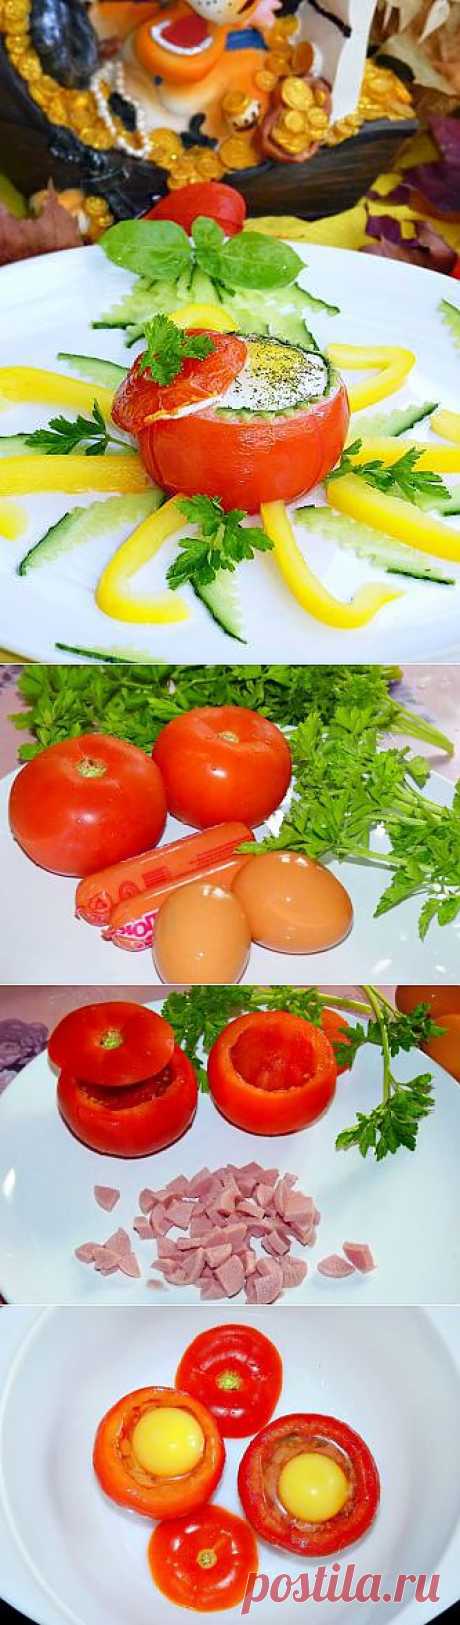 (+1) тема - Яичница глазунья в помидорах | Любимые рецепты